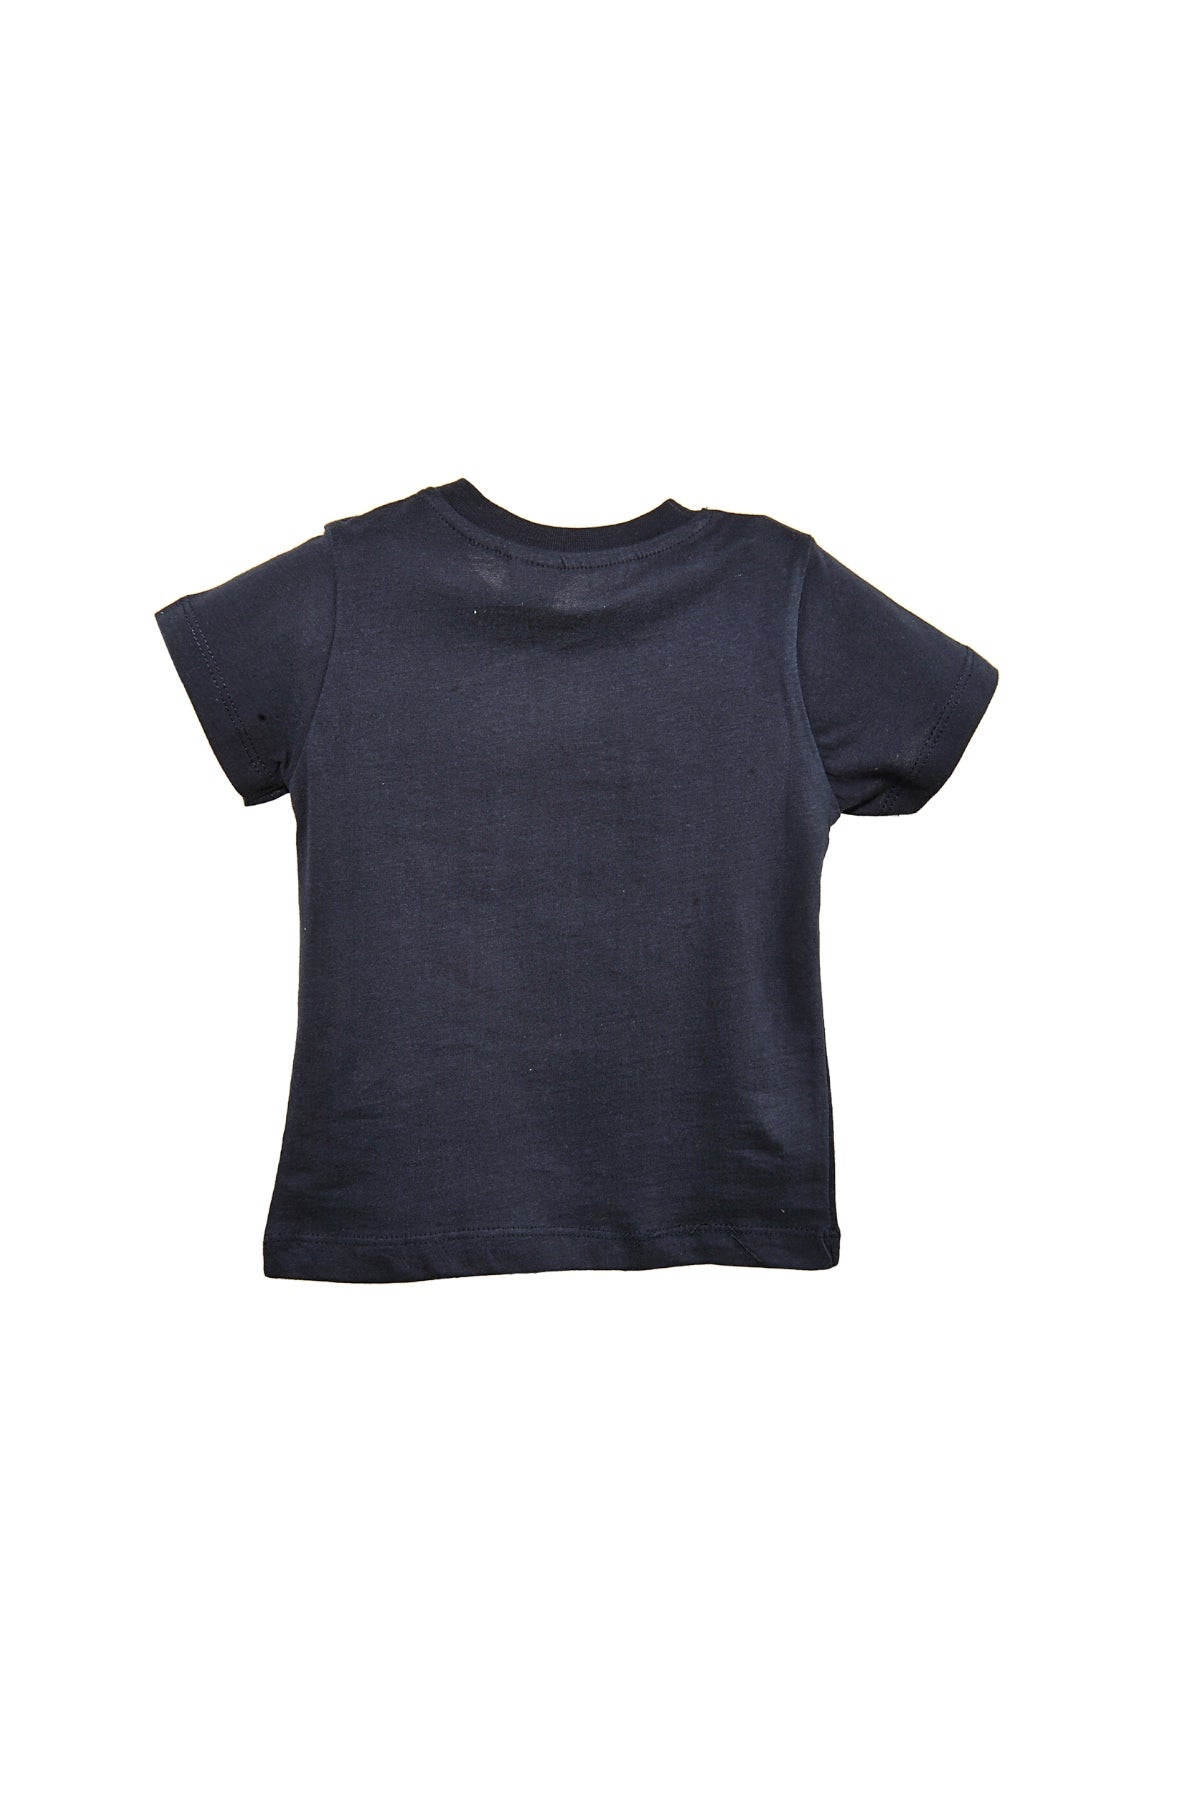 Erkek Bebek Yaka Çıtçıtlı Beyaz Cepli Lacivert T-Shirt (9ay-4yaş)-4